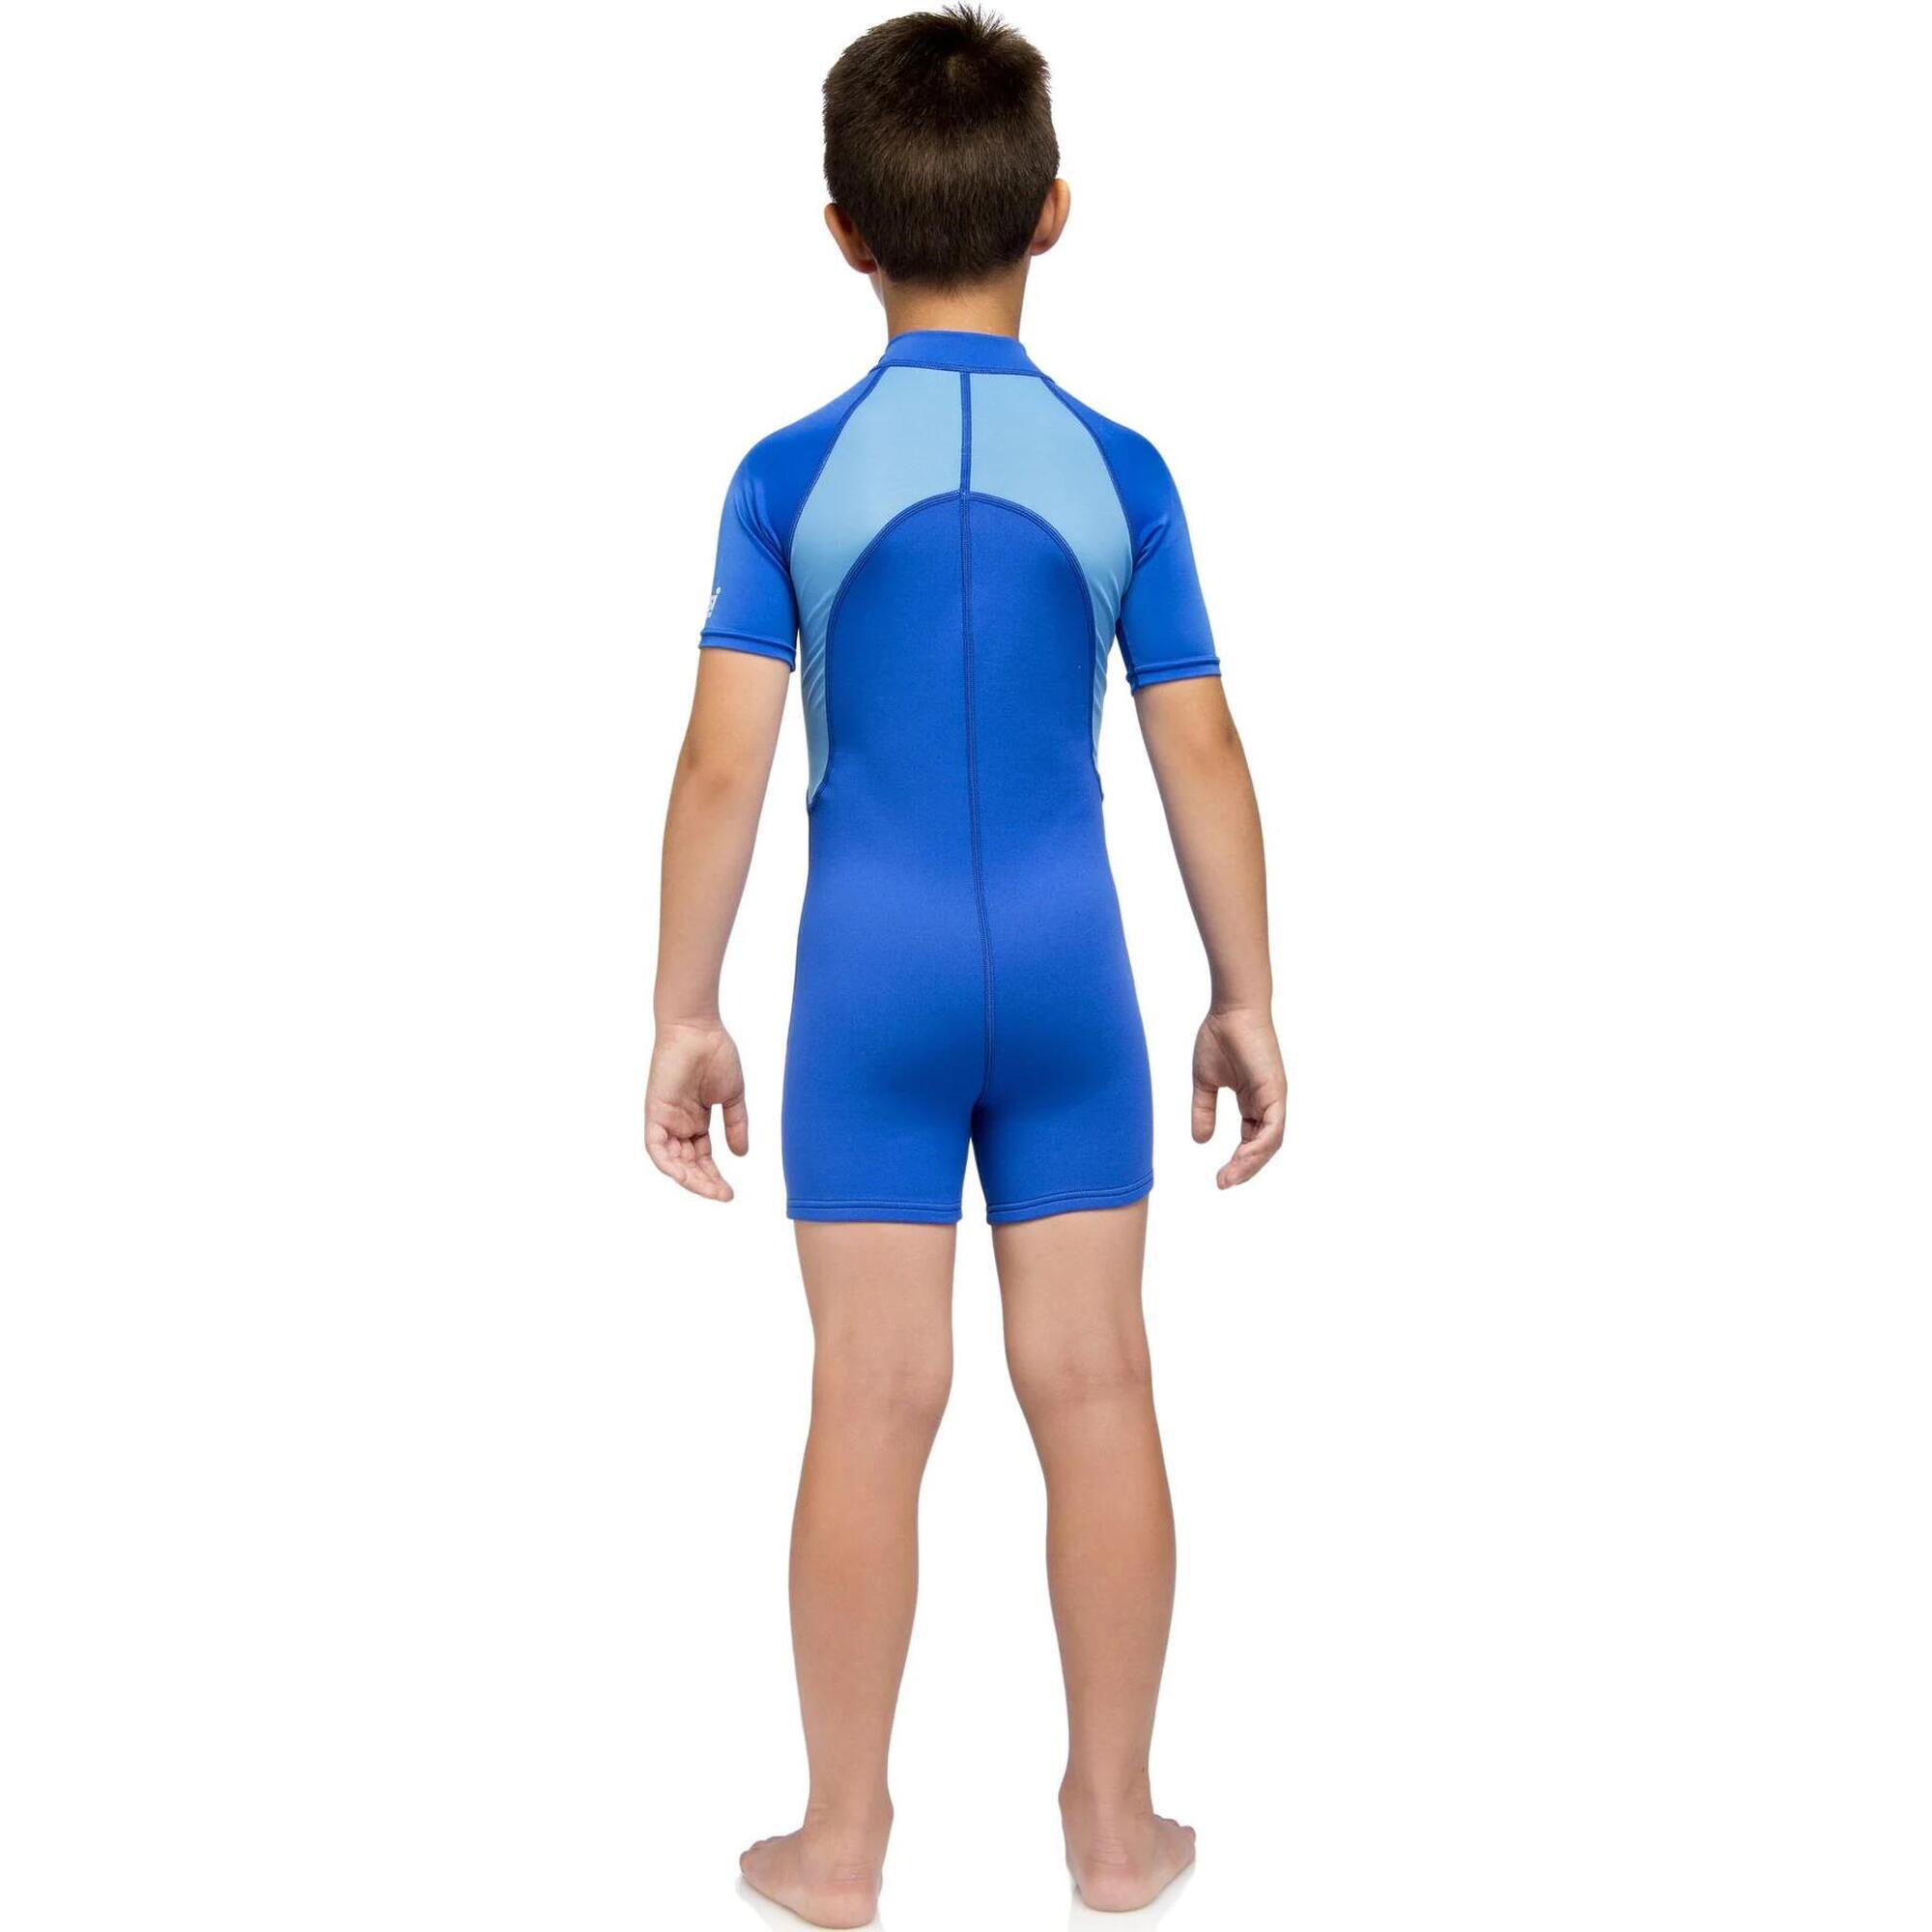 兒童泳衣短款 1.5mm - 藍色 - 2XL